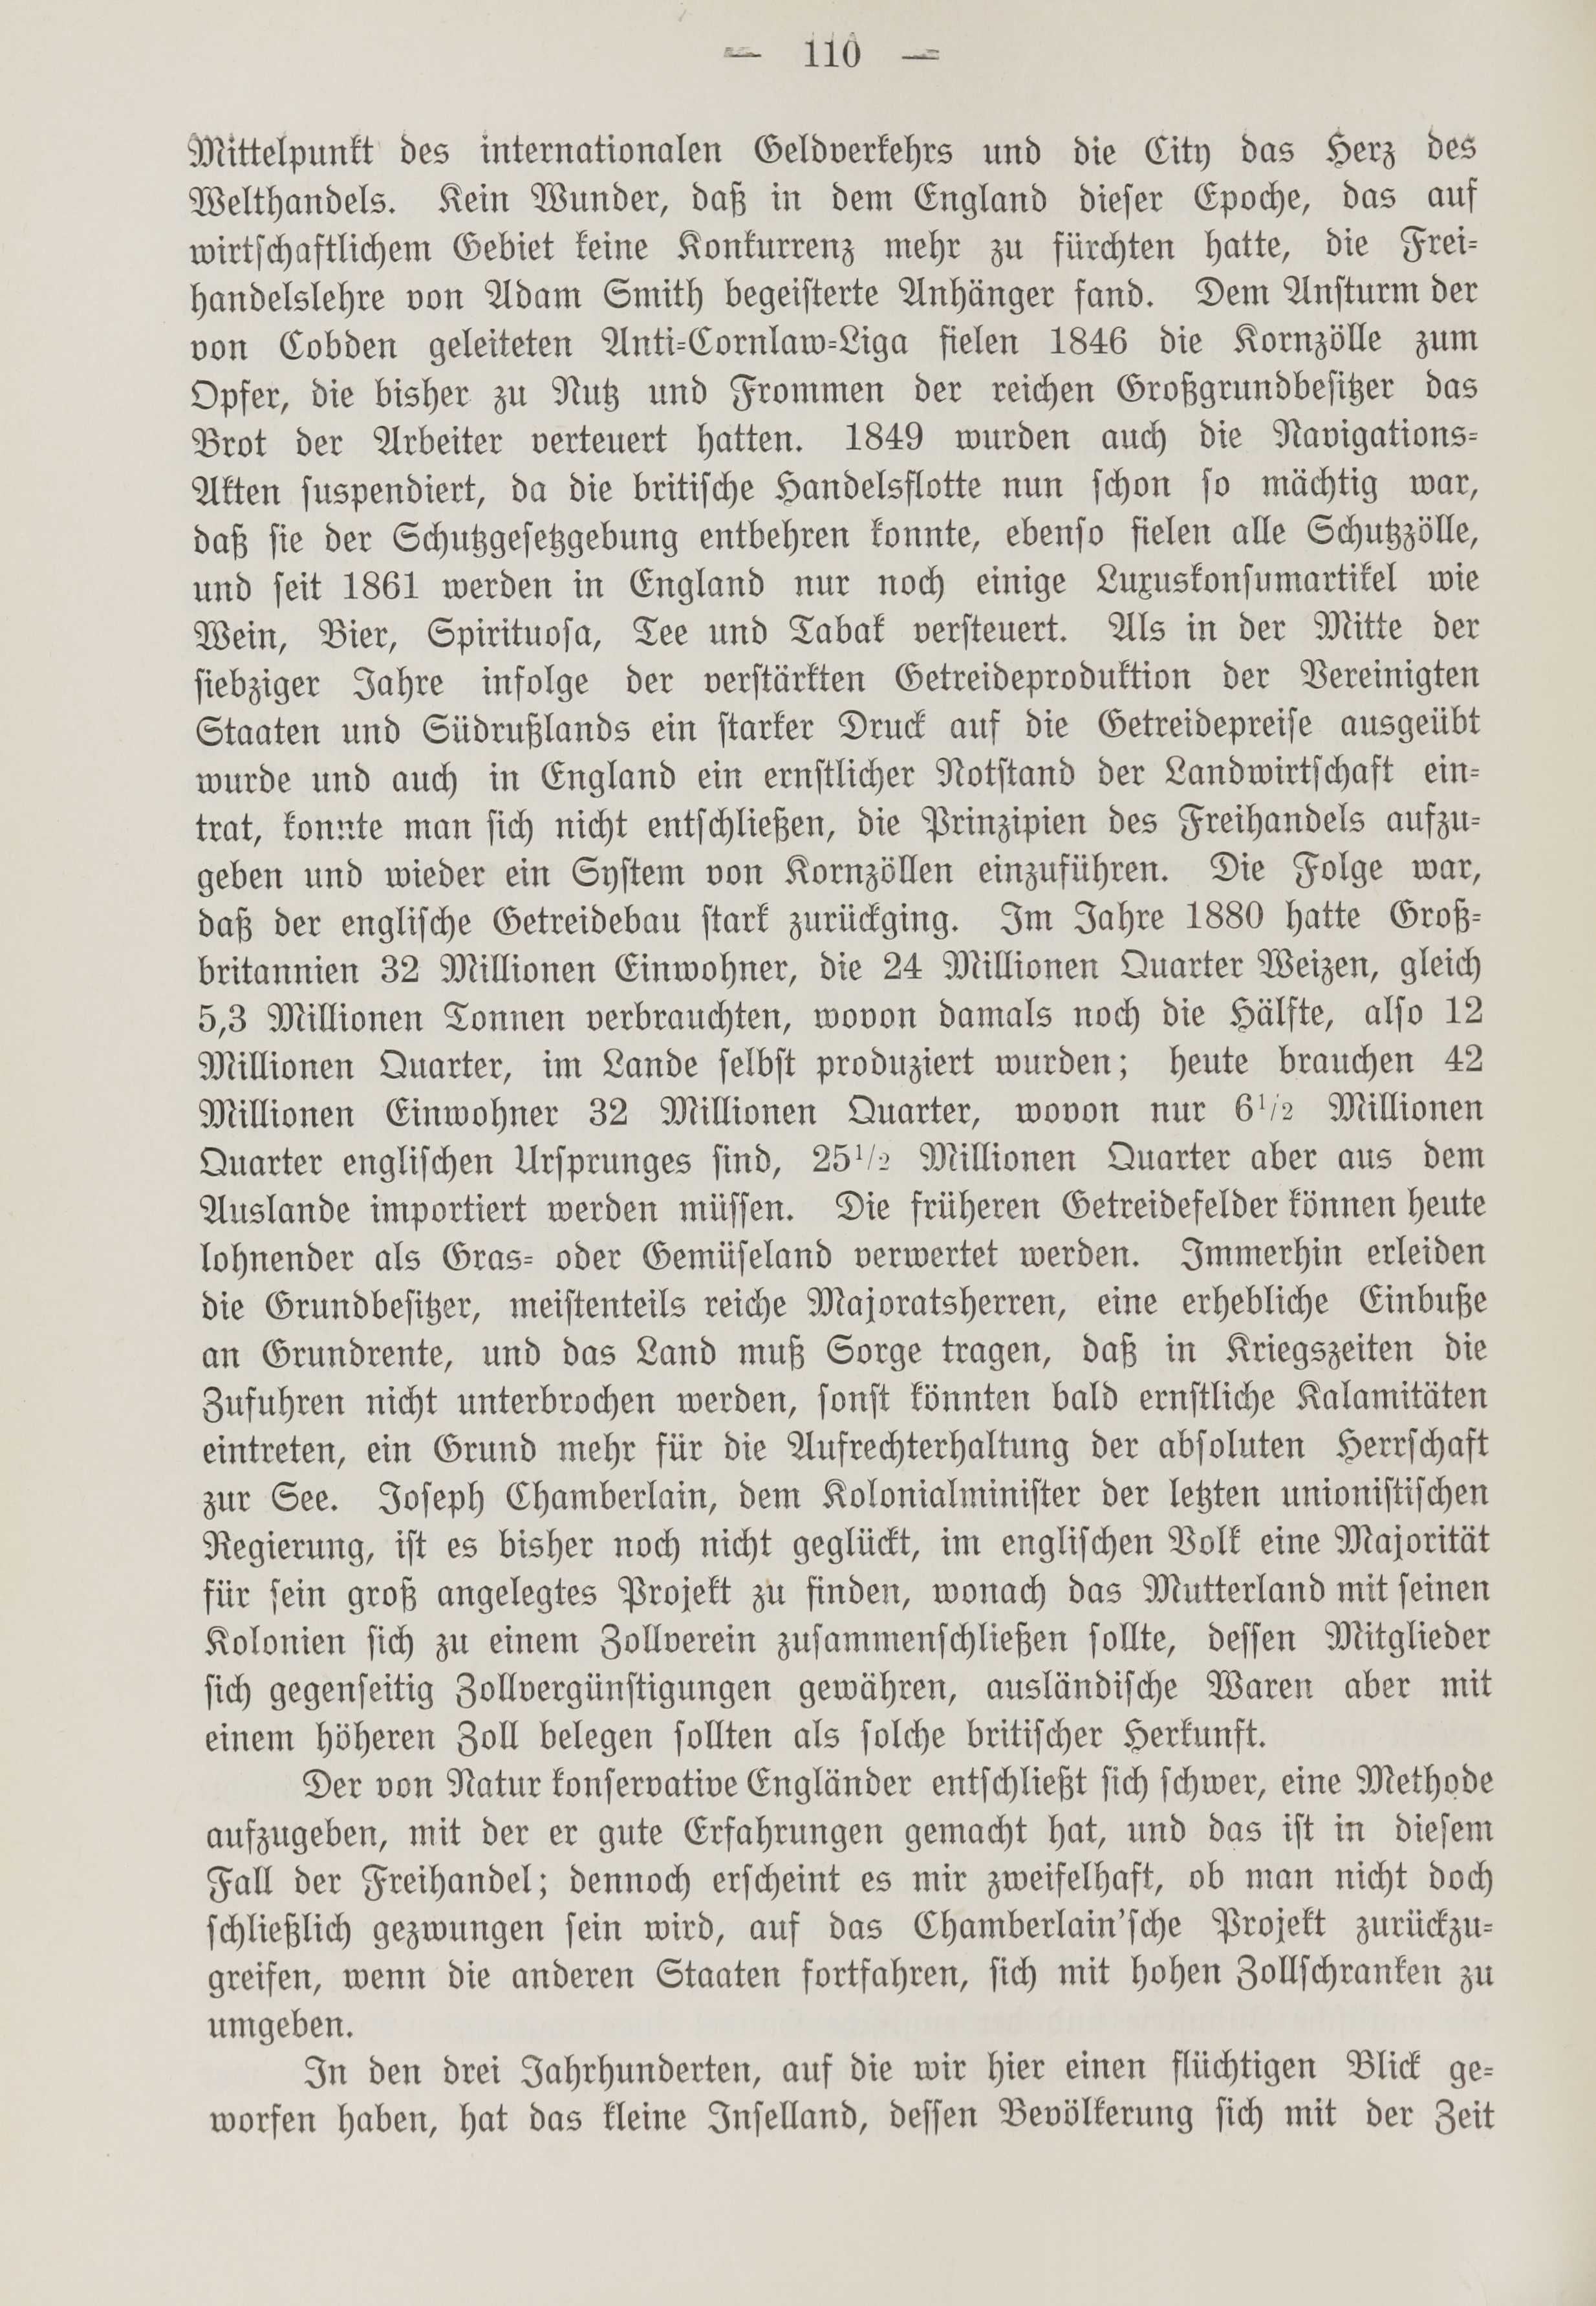 Deutsche Monatsschrift für Russland [1] (1912) | 118. (110) Põhitekst